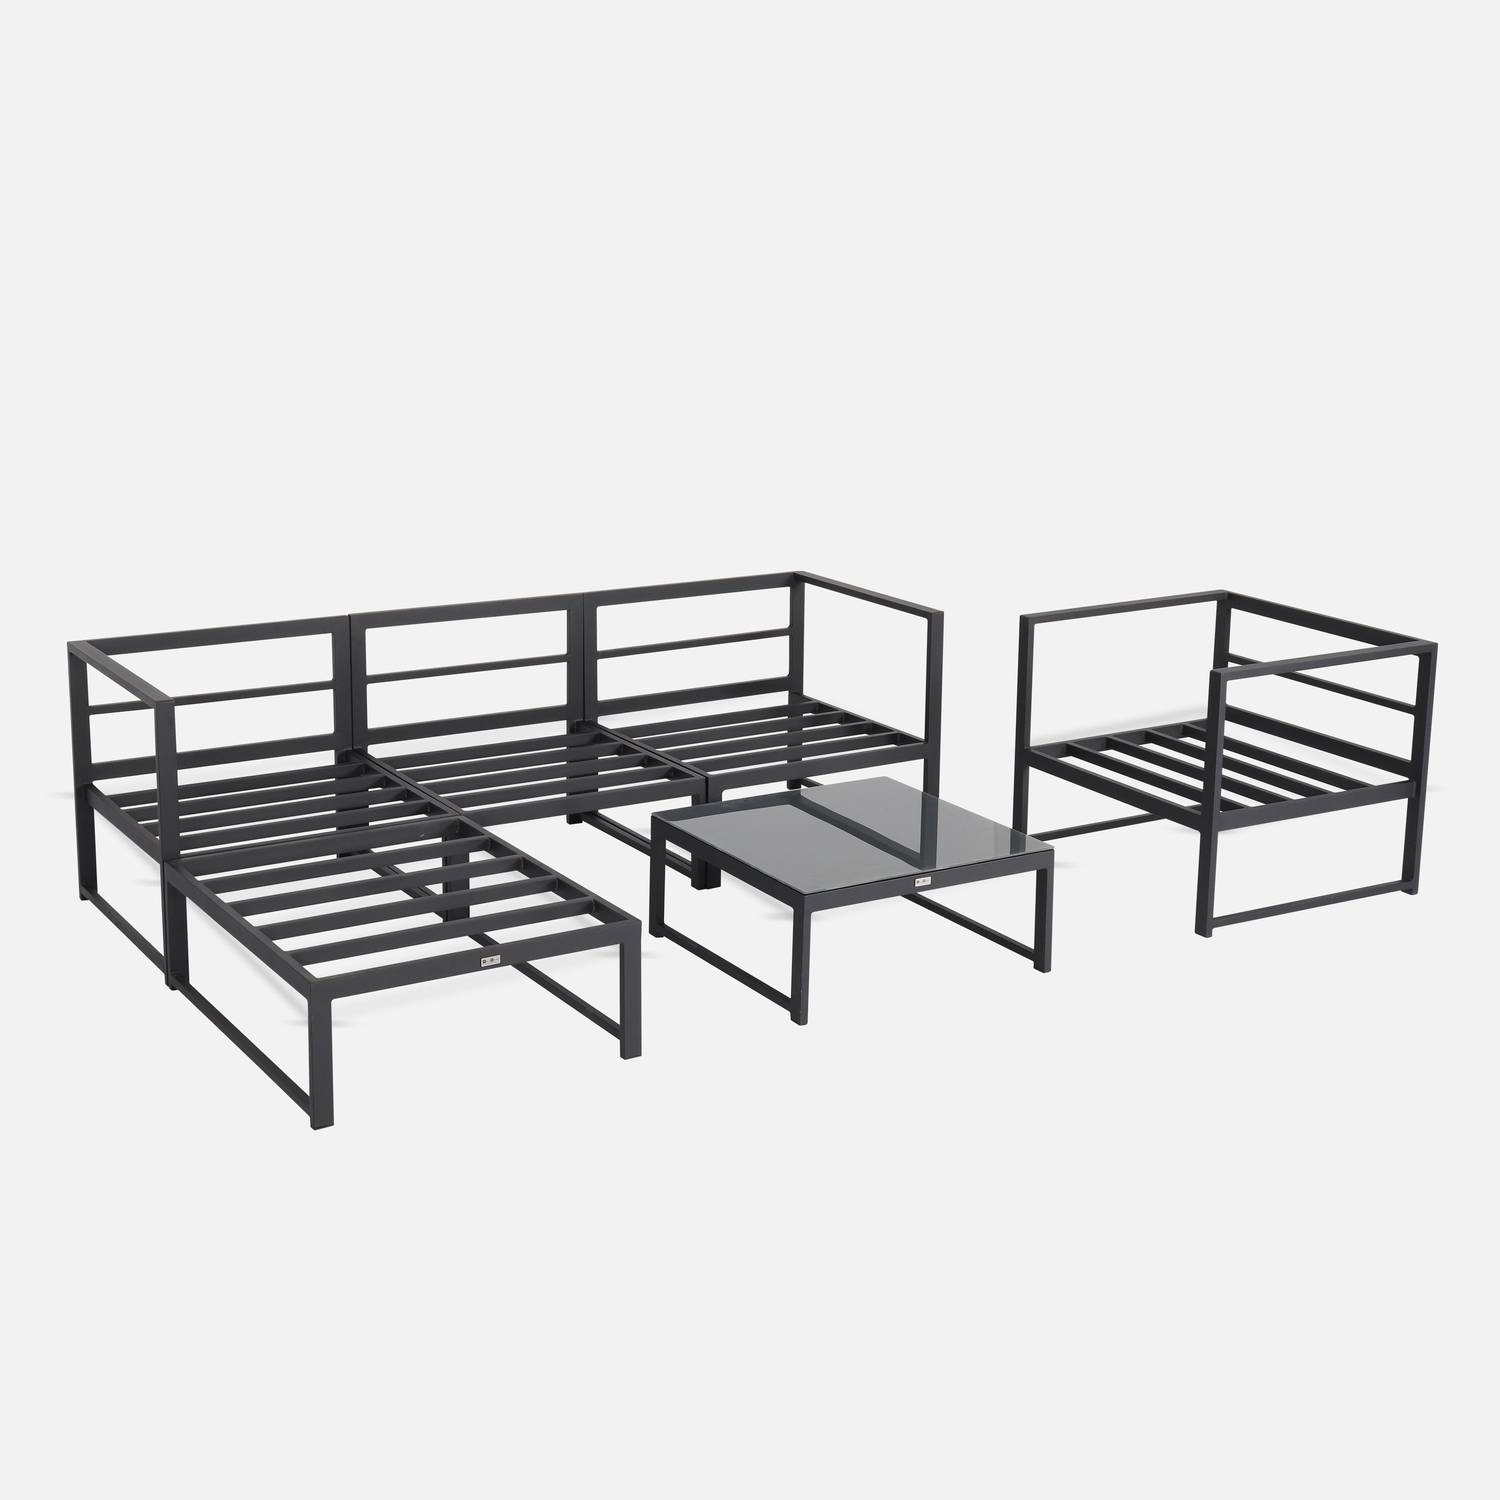 5 Sitze Gartengarnitur - Acatium - Anthrazit und grau, 6 Aluminiumelemente, dicke Kissen, Designstück und zusammenstellbar Photo9